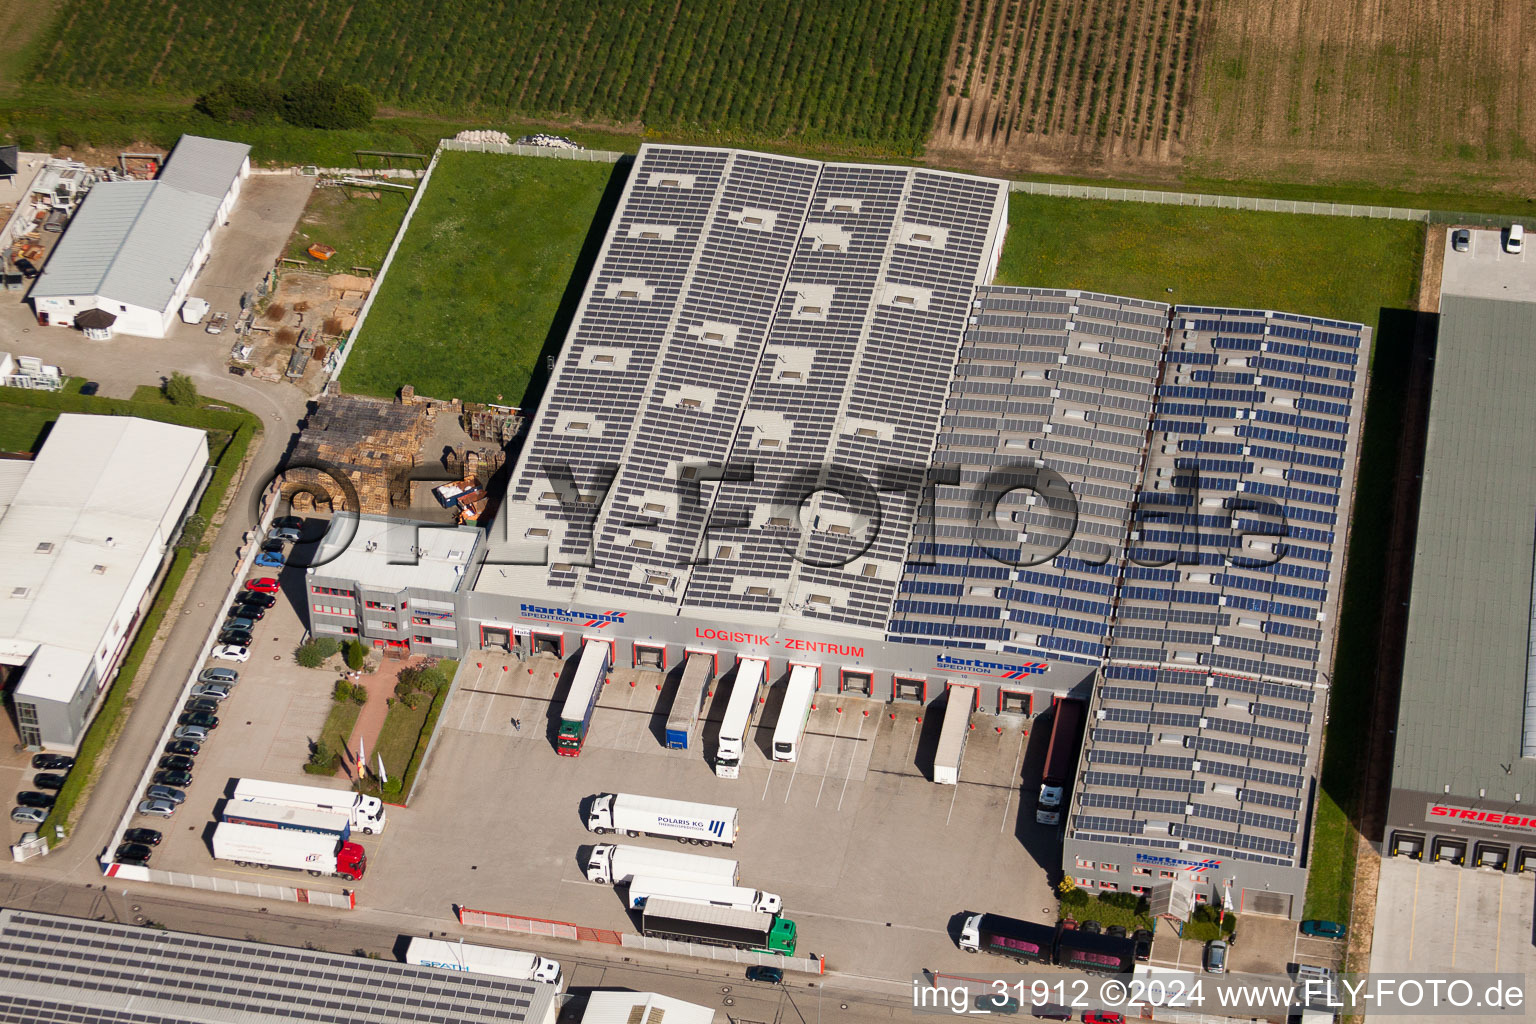 Vue aérienne de Zone industrielle de Schleifweg, société de transport Centre logistique Hartmann à Muggensturm dans le département Bade-Wurtemberg, Allemagne